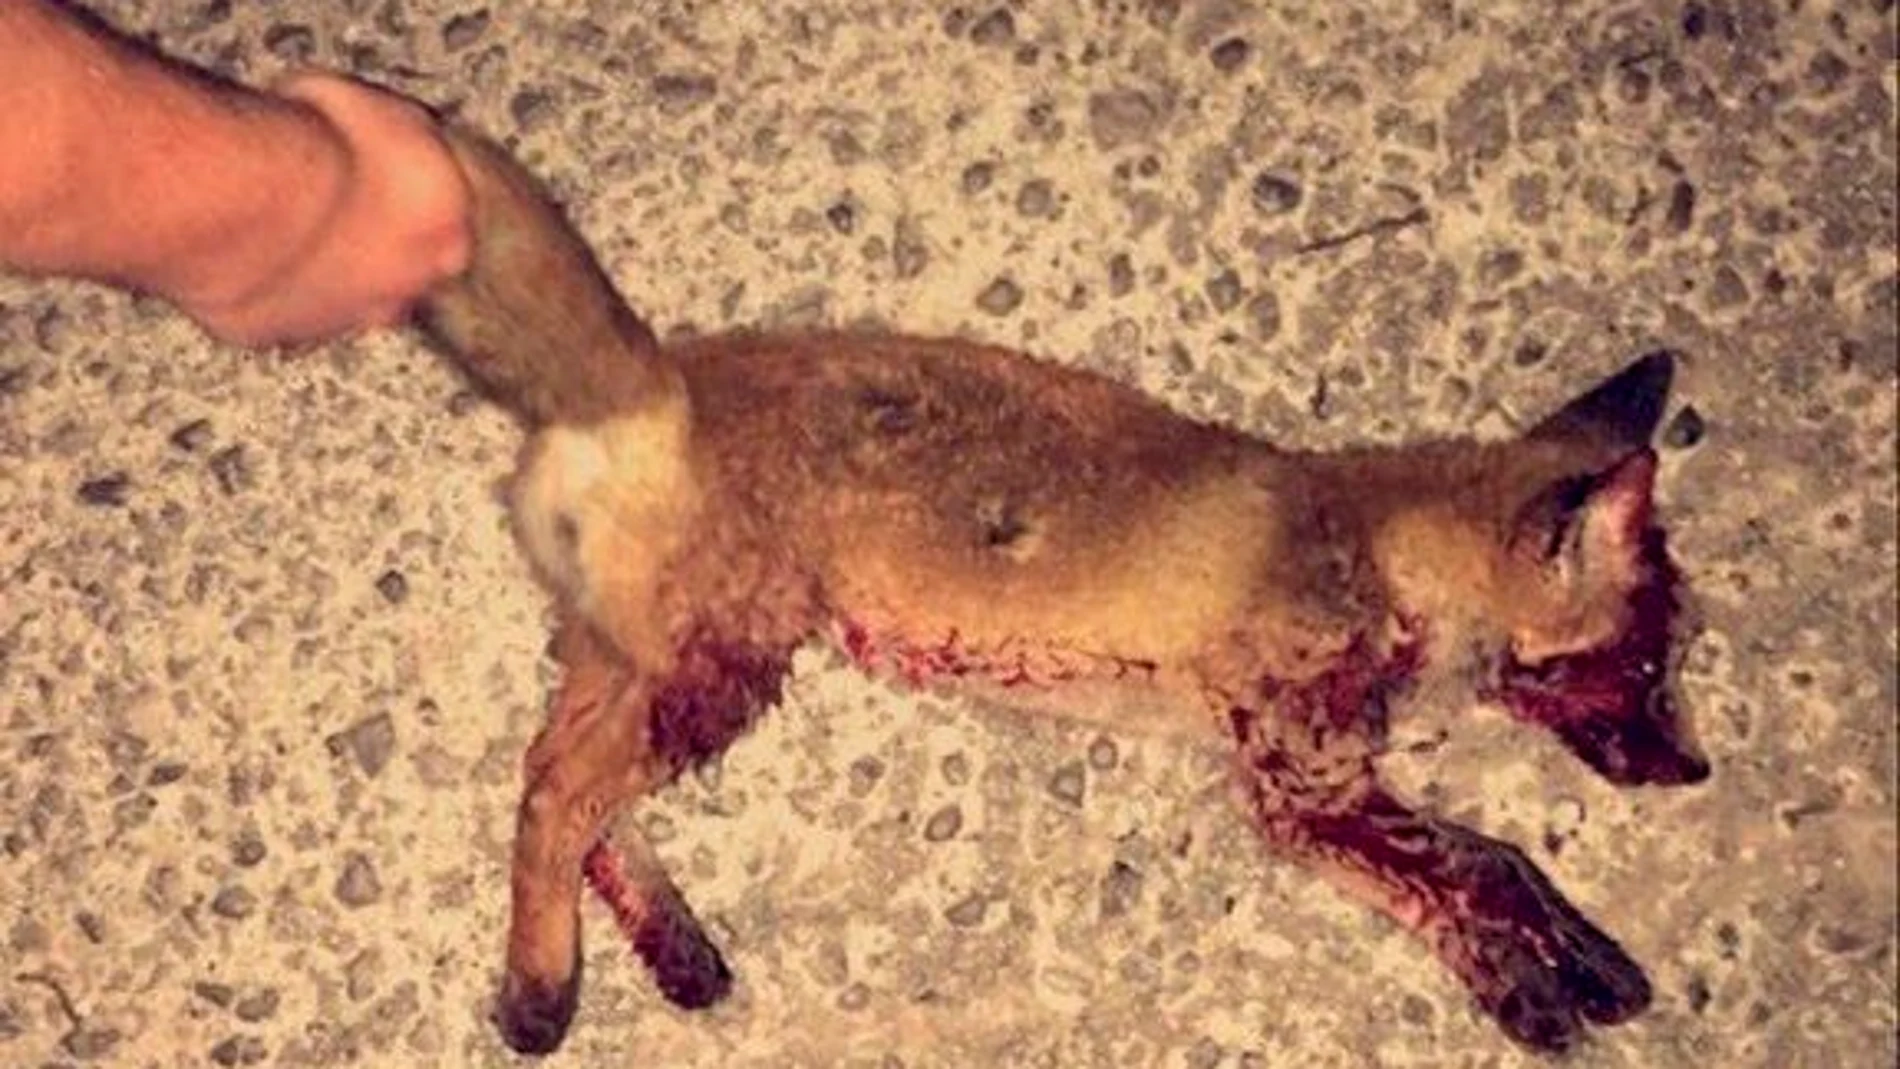 La foto del zorro muerto publicada en las redes sociales 